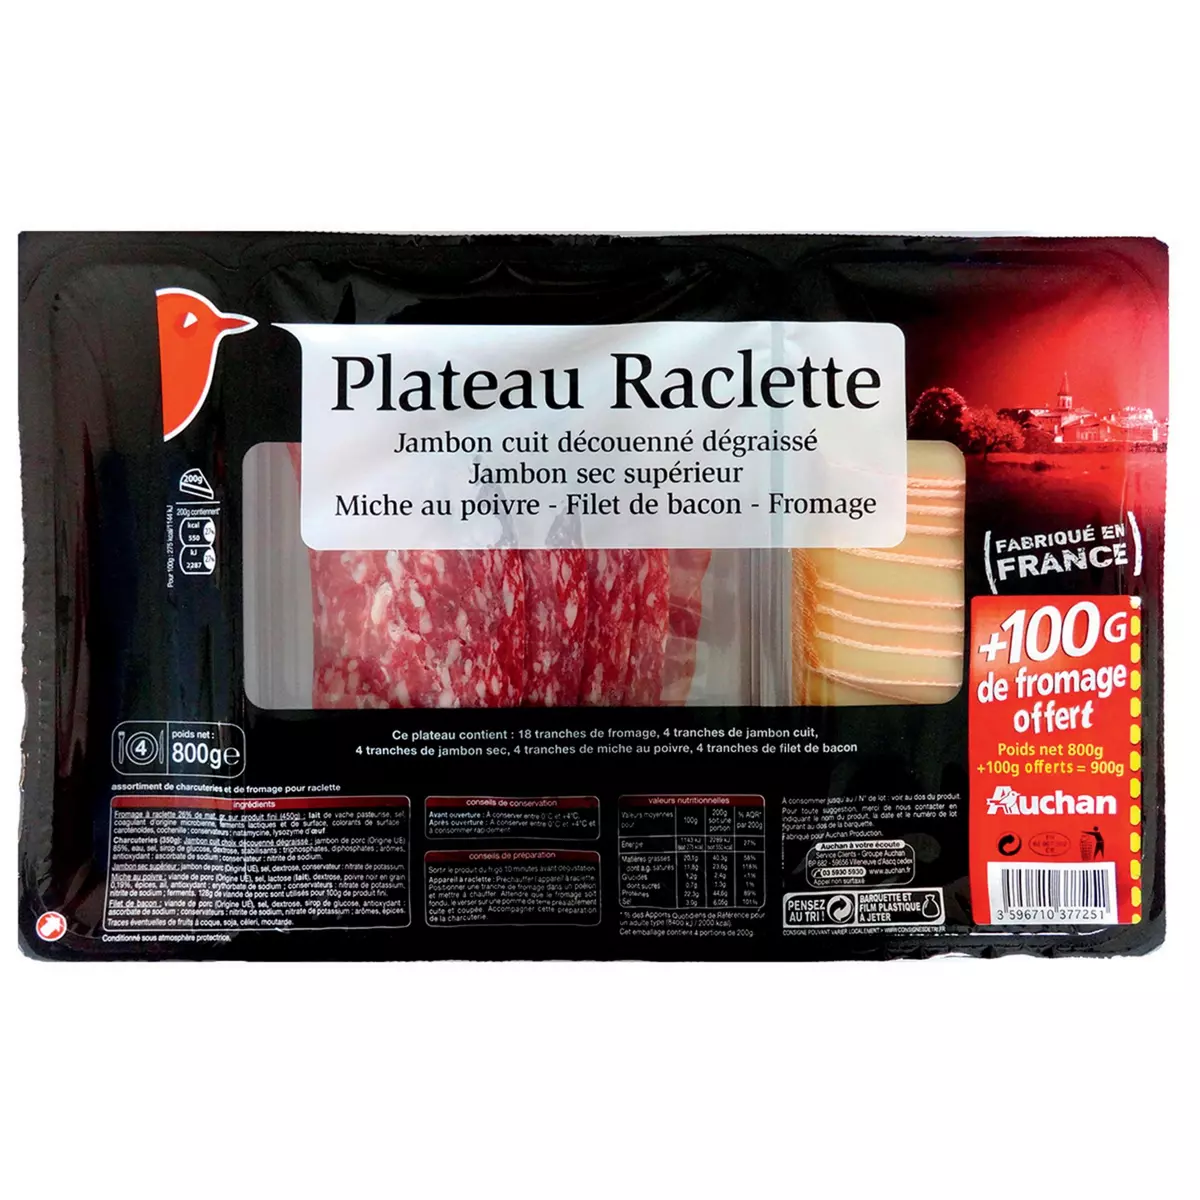 AUCHAN Plateau raclette fromage et charcuterie 800g+100g offert